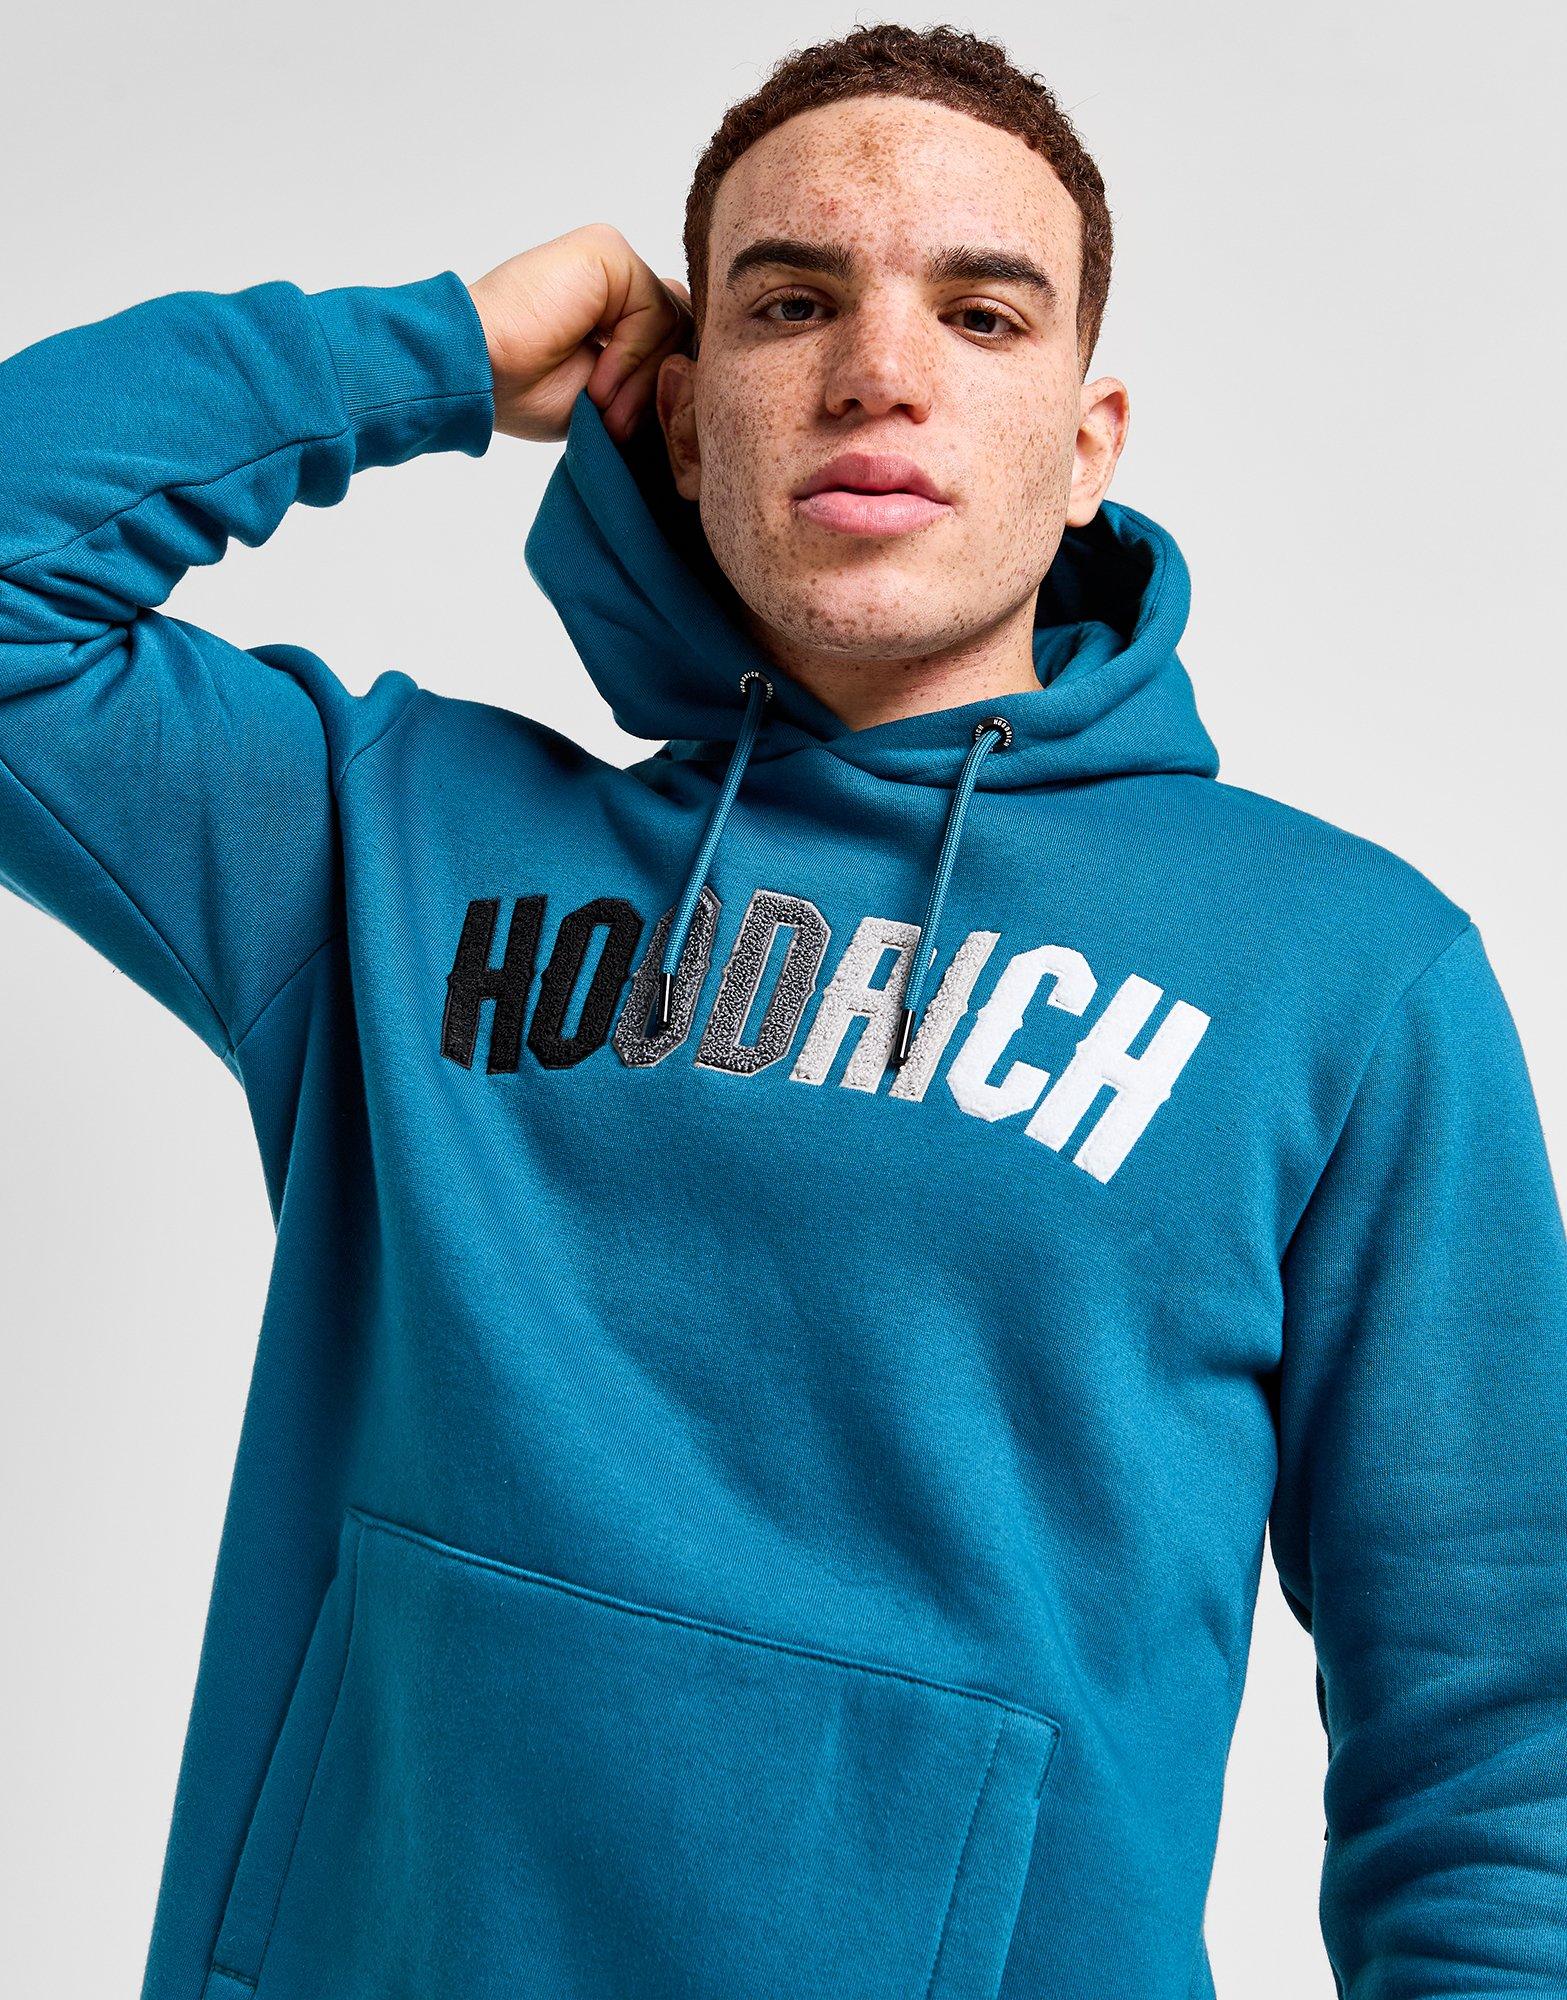 hoodrich hoodie blue